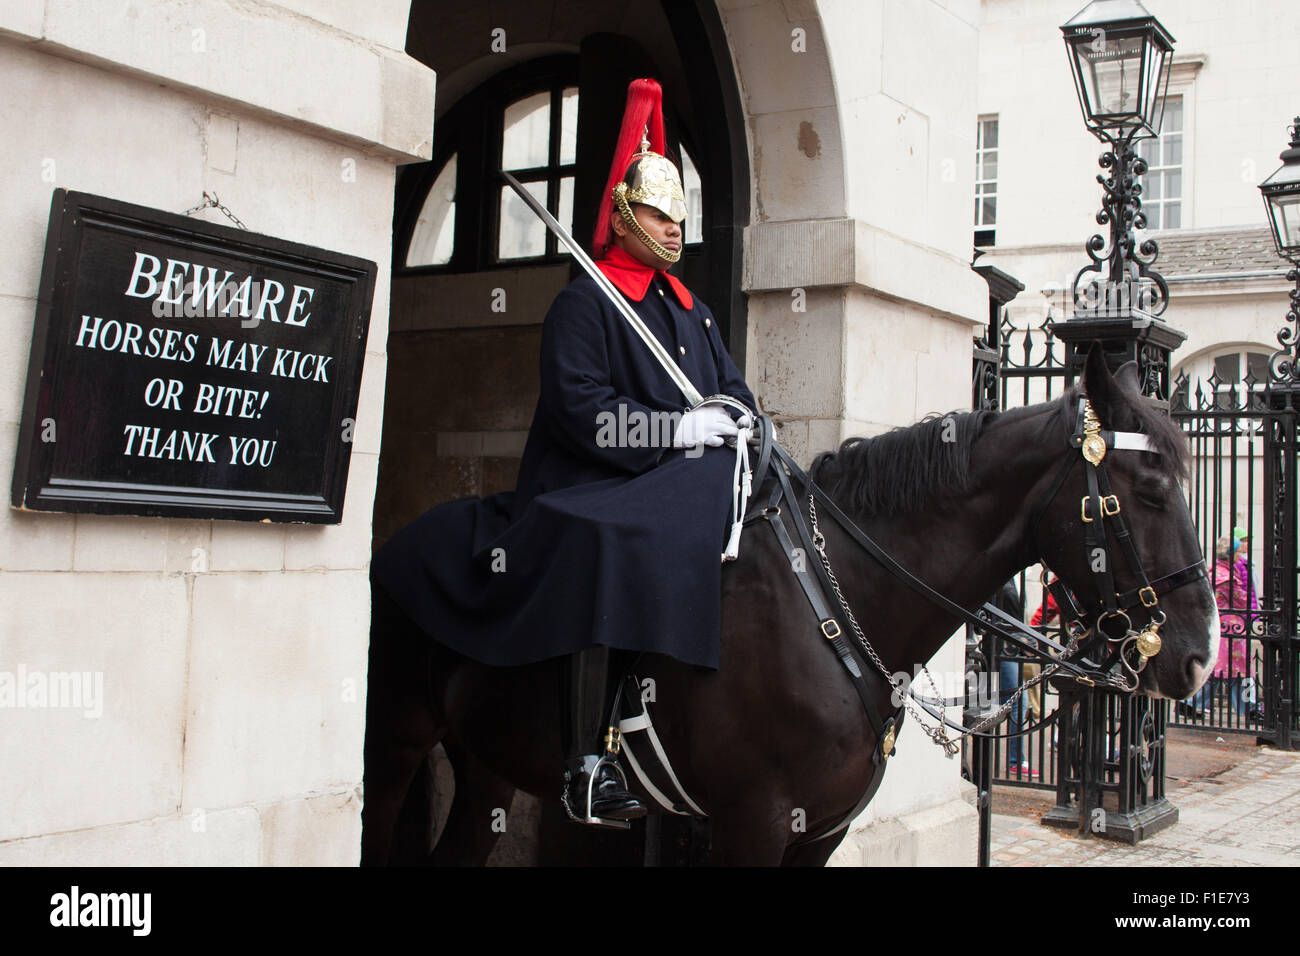 Horse Guard, Whitehall, Londra,UK attenzione i cavalli possono calciare o mordere! Foto Stock